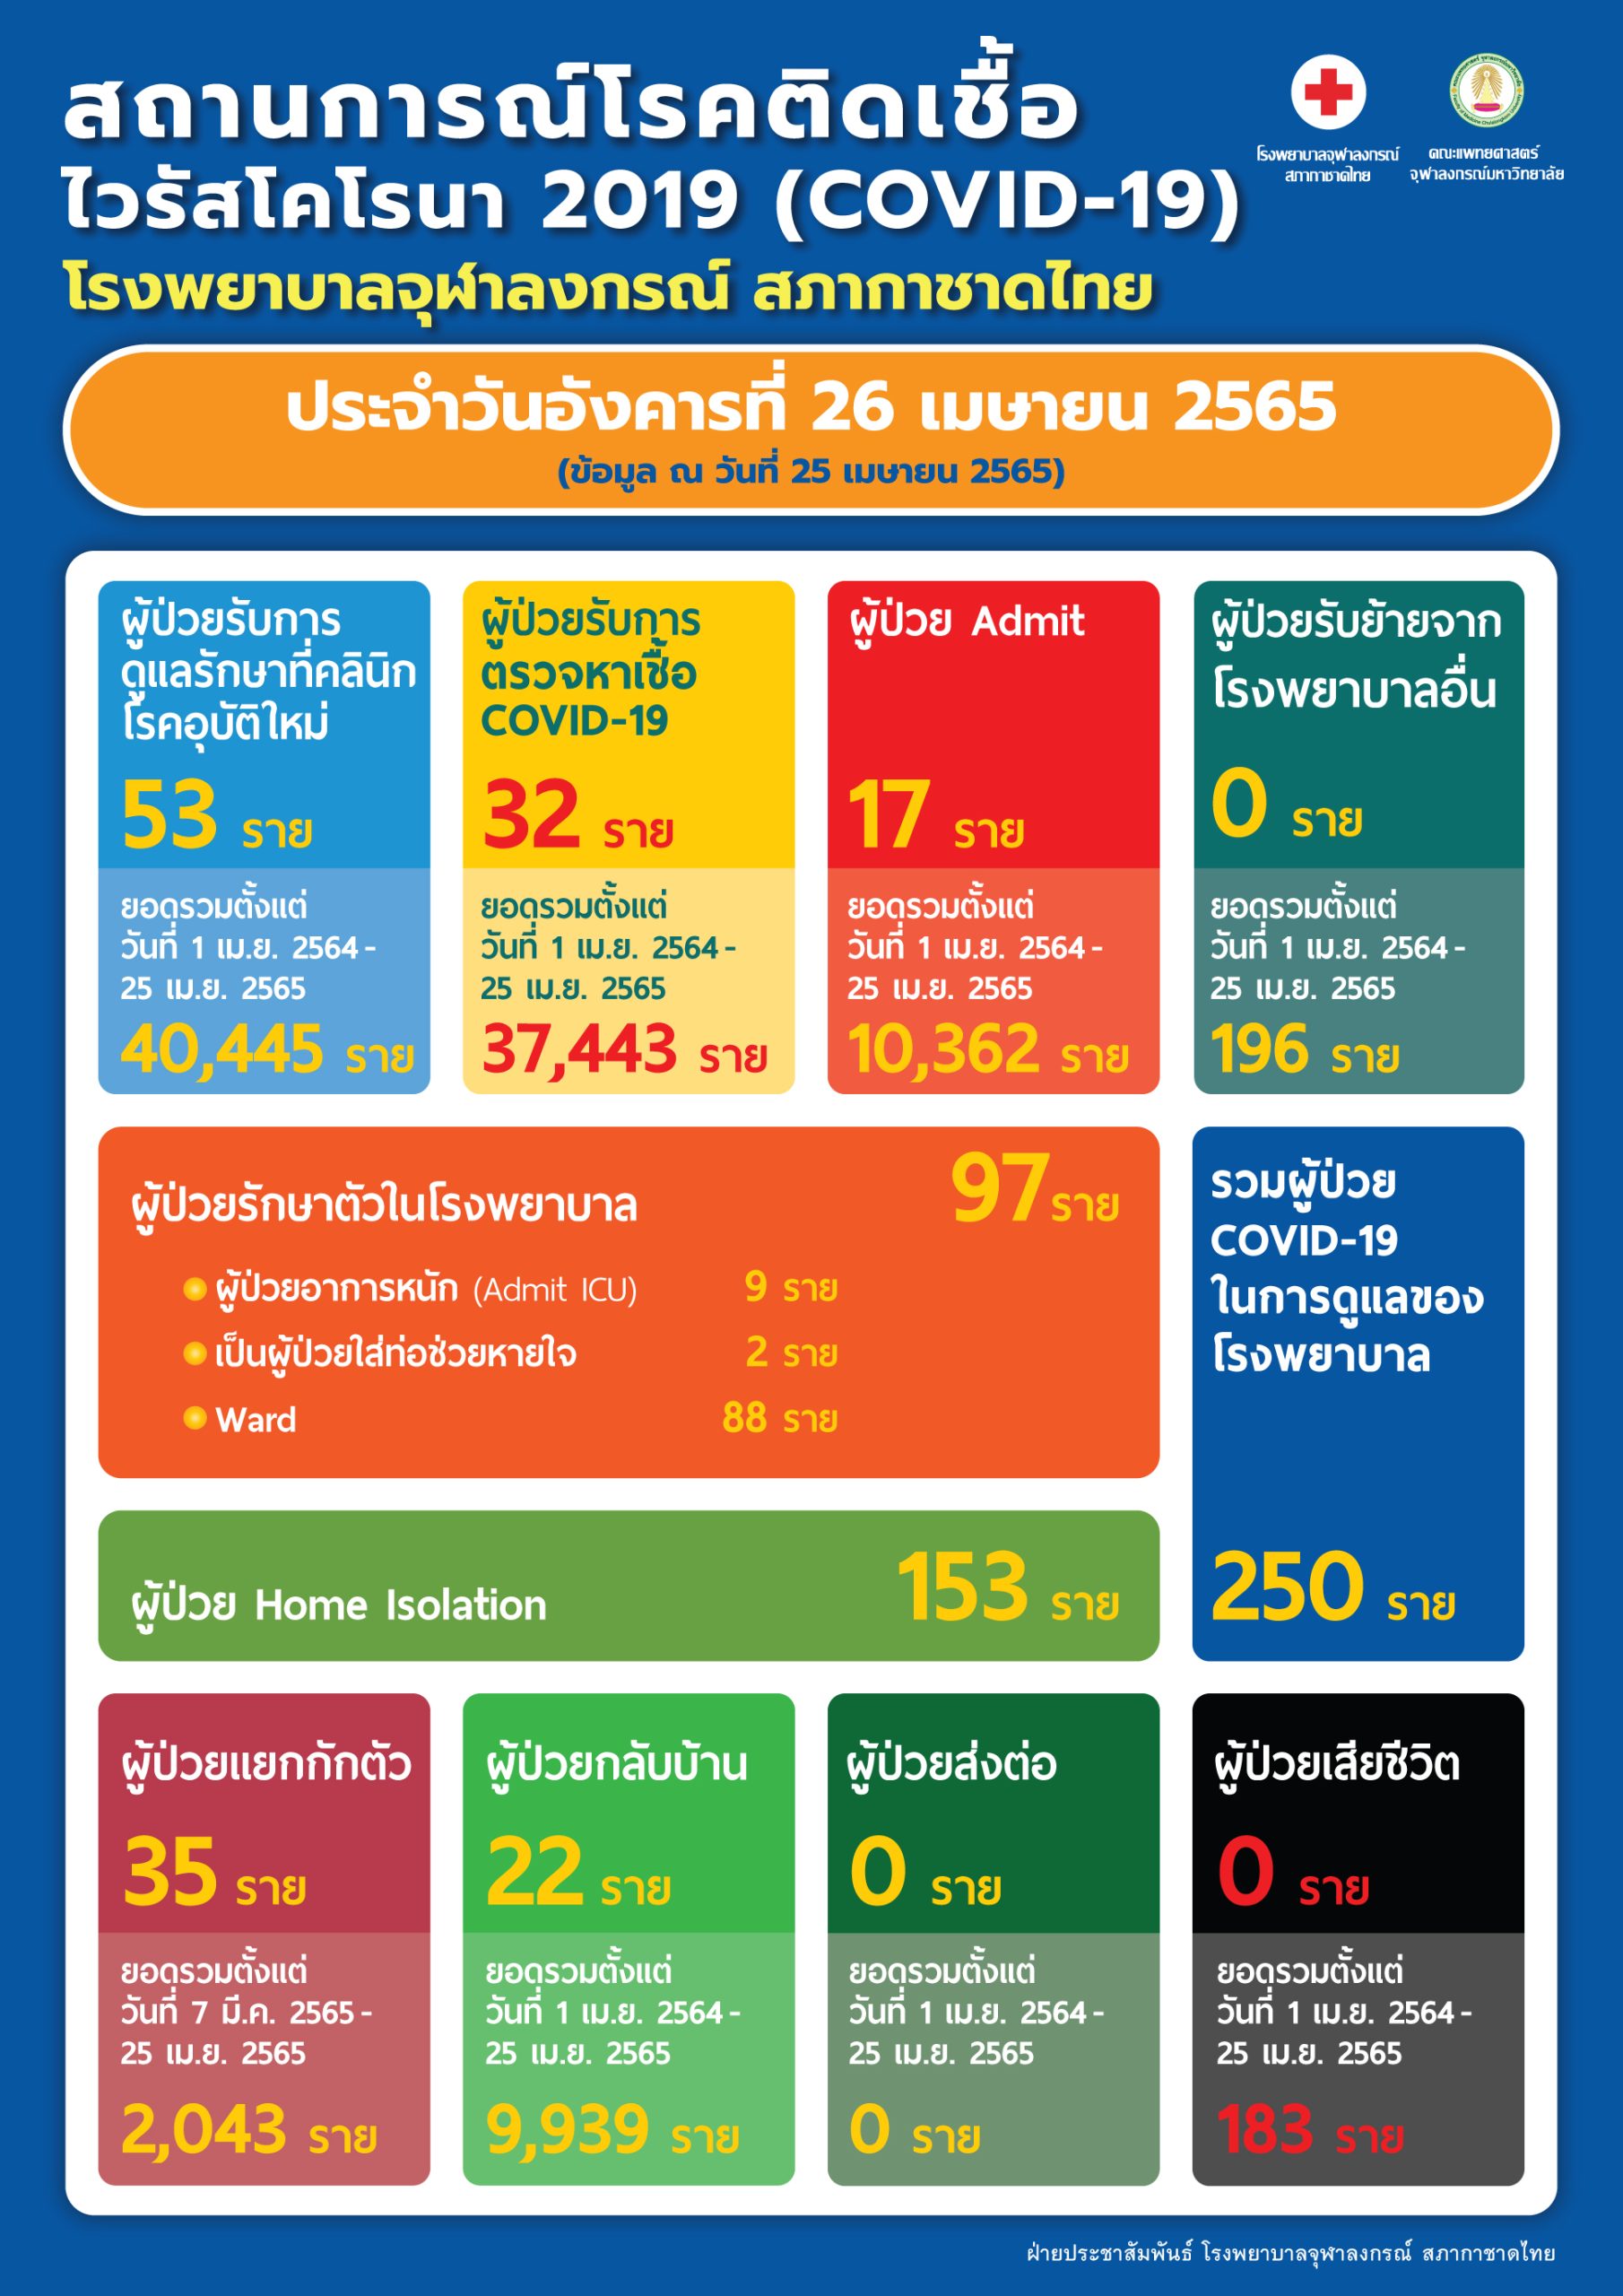 สถานการณ์โรคติดเชื้อ ไวรัสโคโรนา 2019 (COVID-19) โรงพยาบาลจุฬาลงกรณ์ สภากาชาดไทย ประจำวันอังคารที่ 26 เมษายน 2565